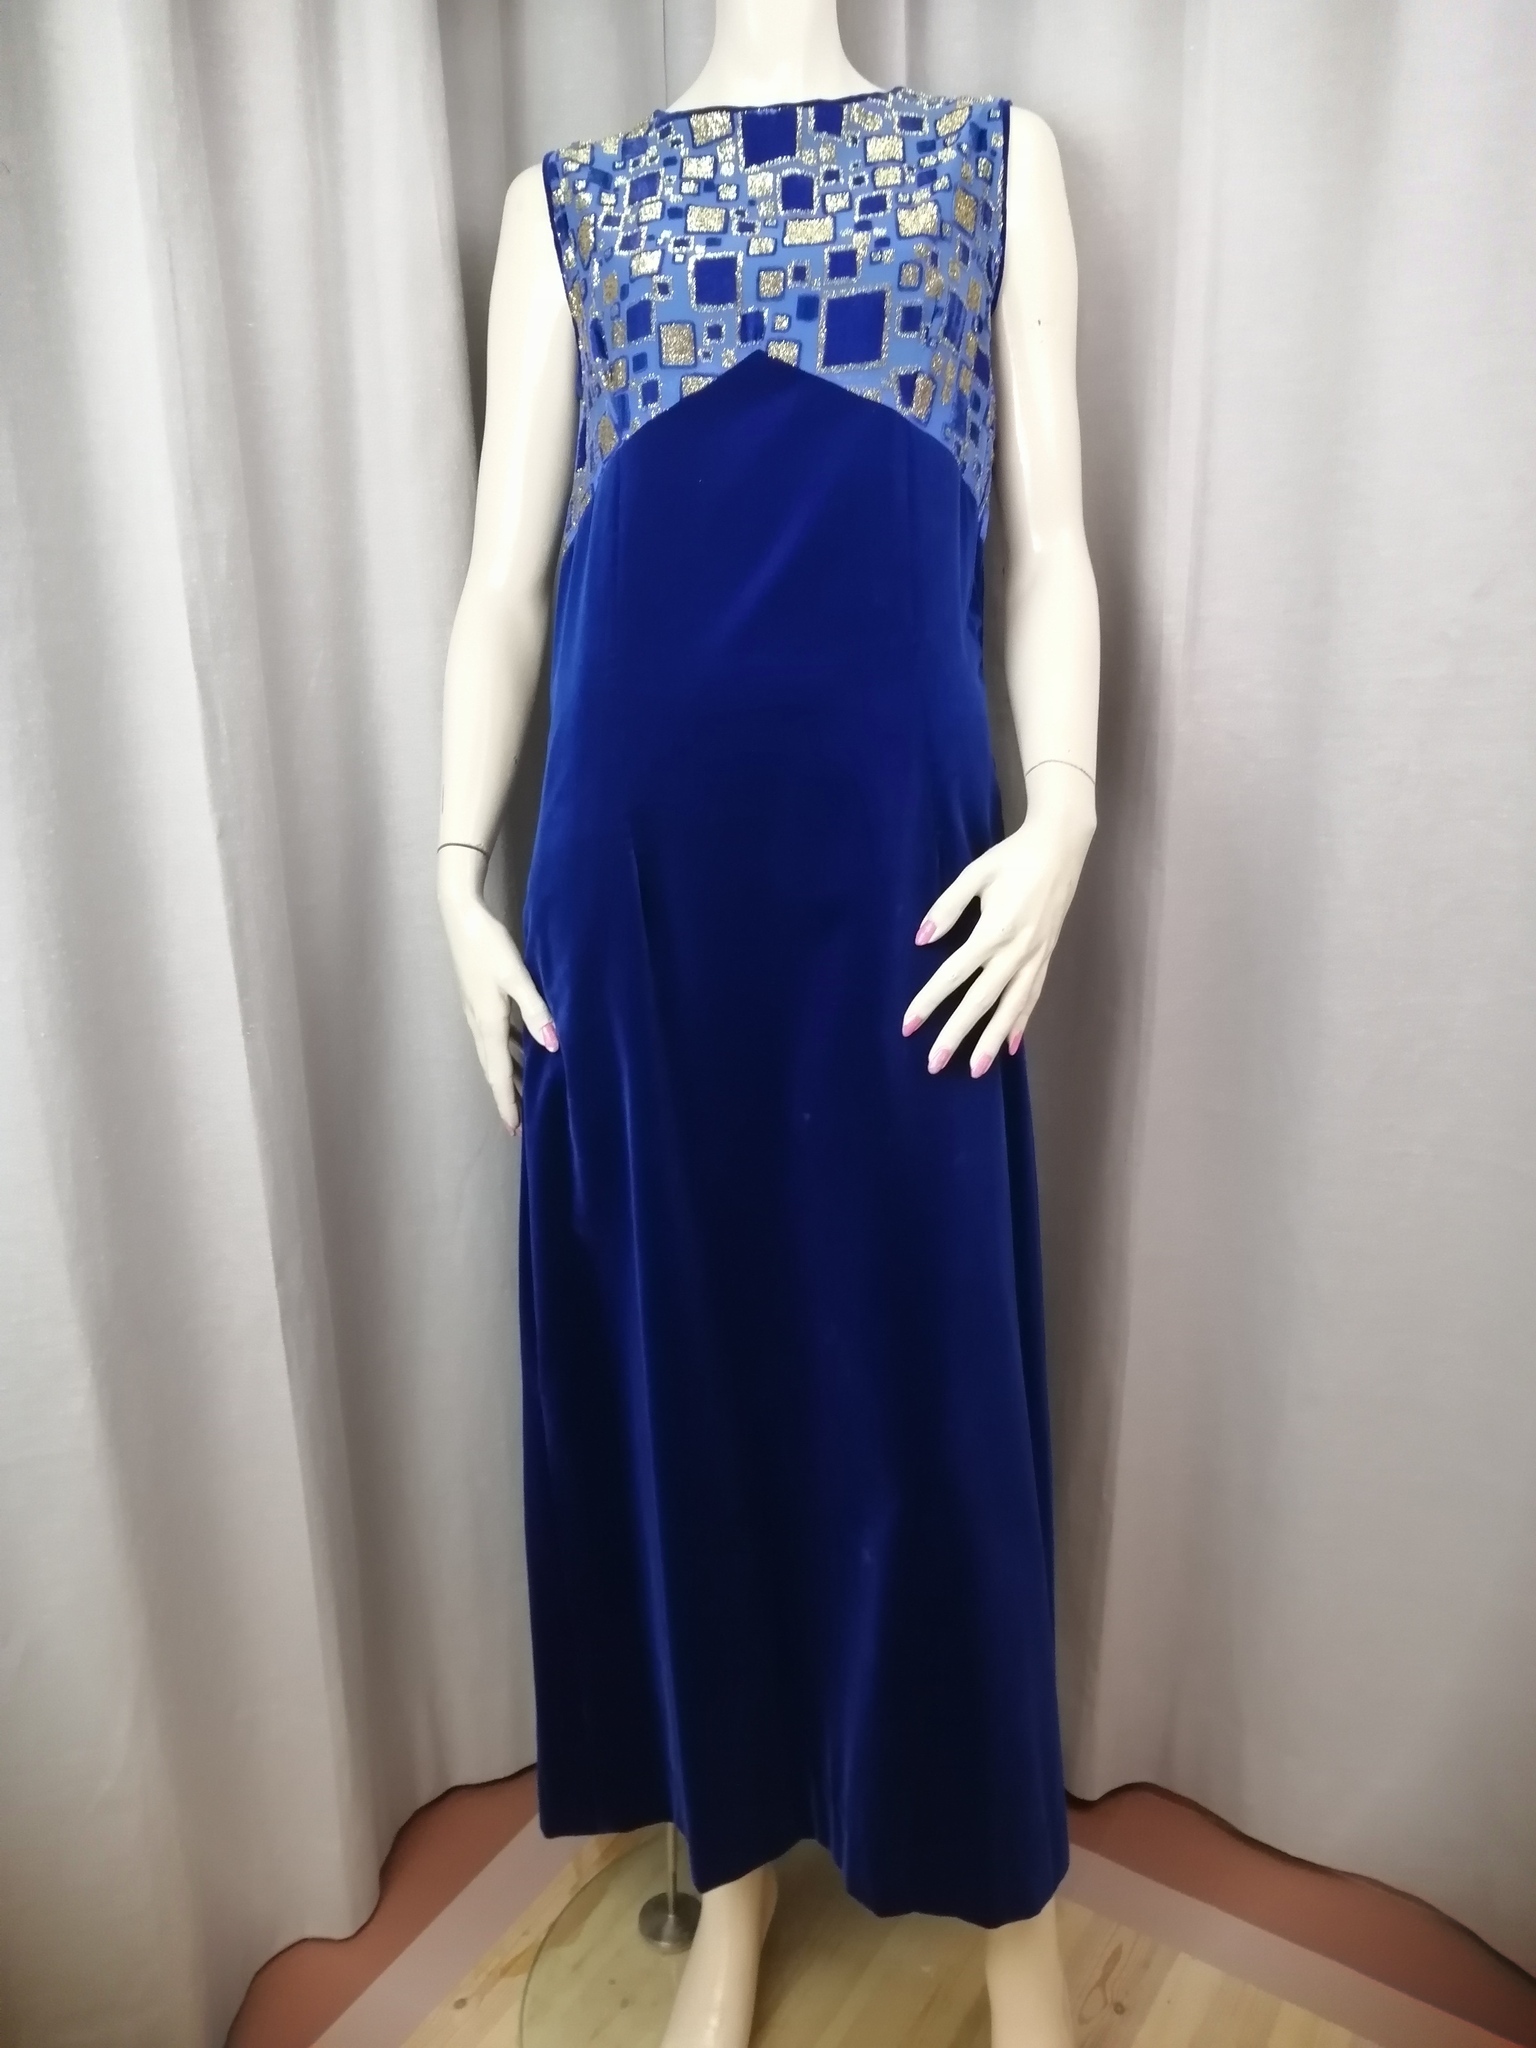 Vintage långklänning blå sammetskjol top med guldf mönster 6070-tal